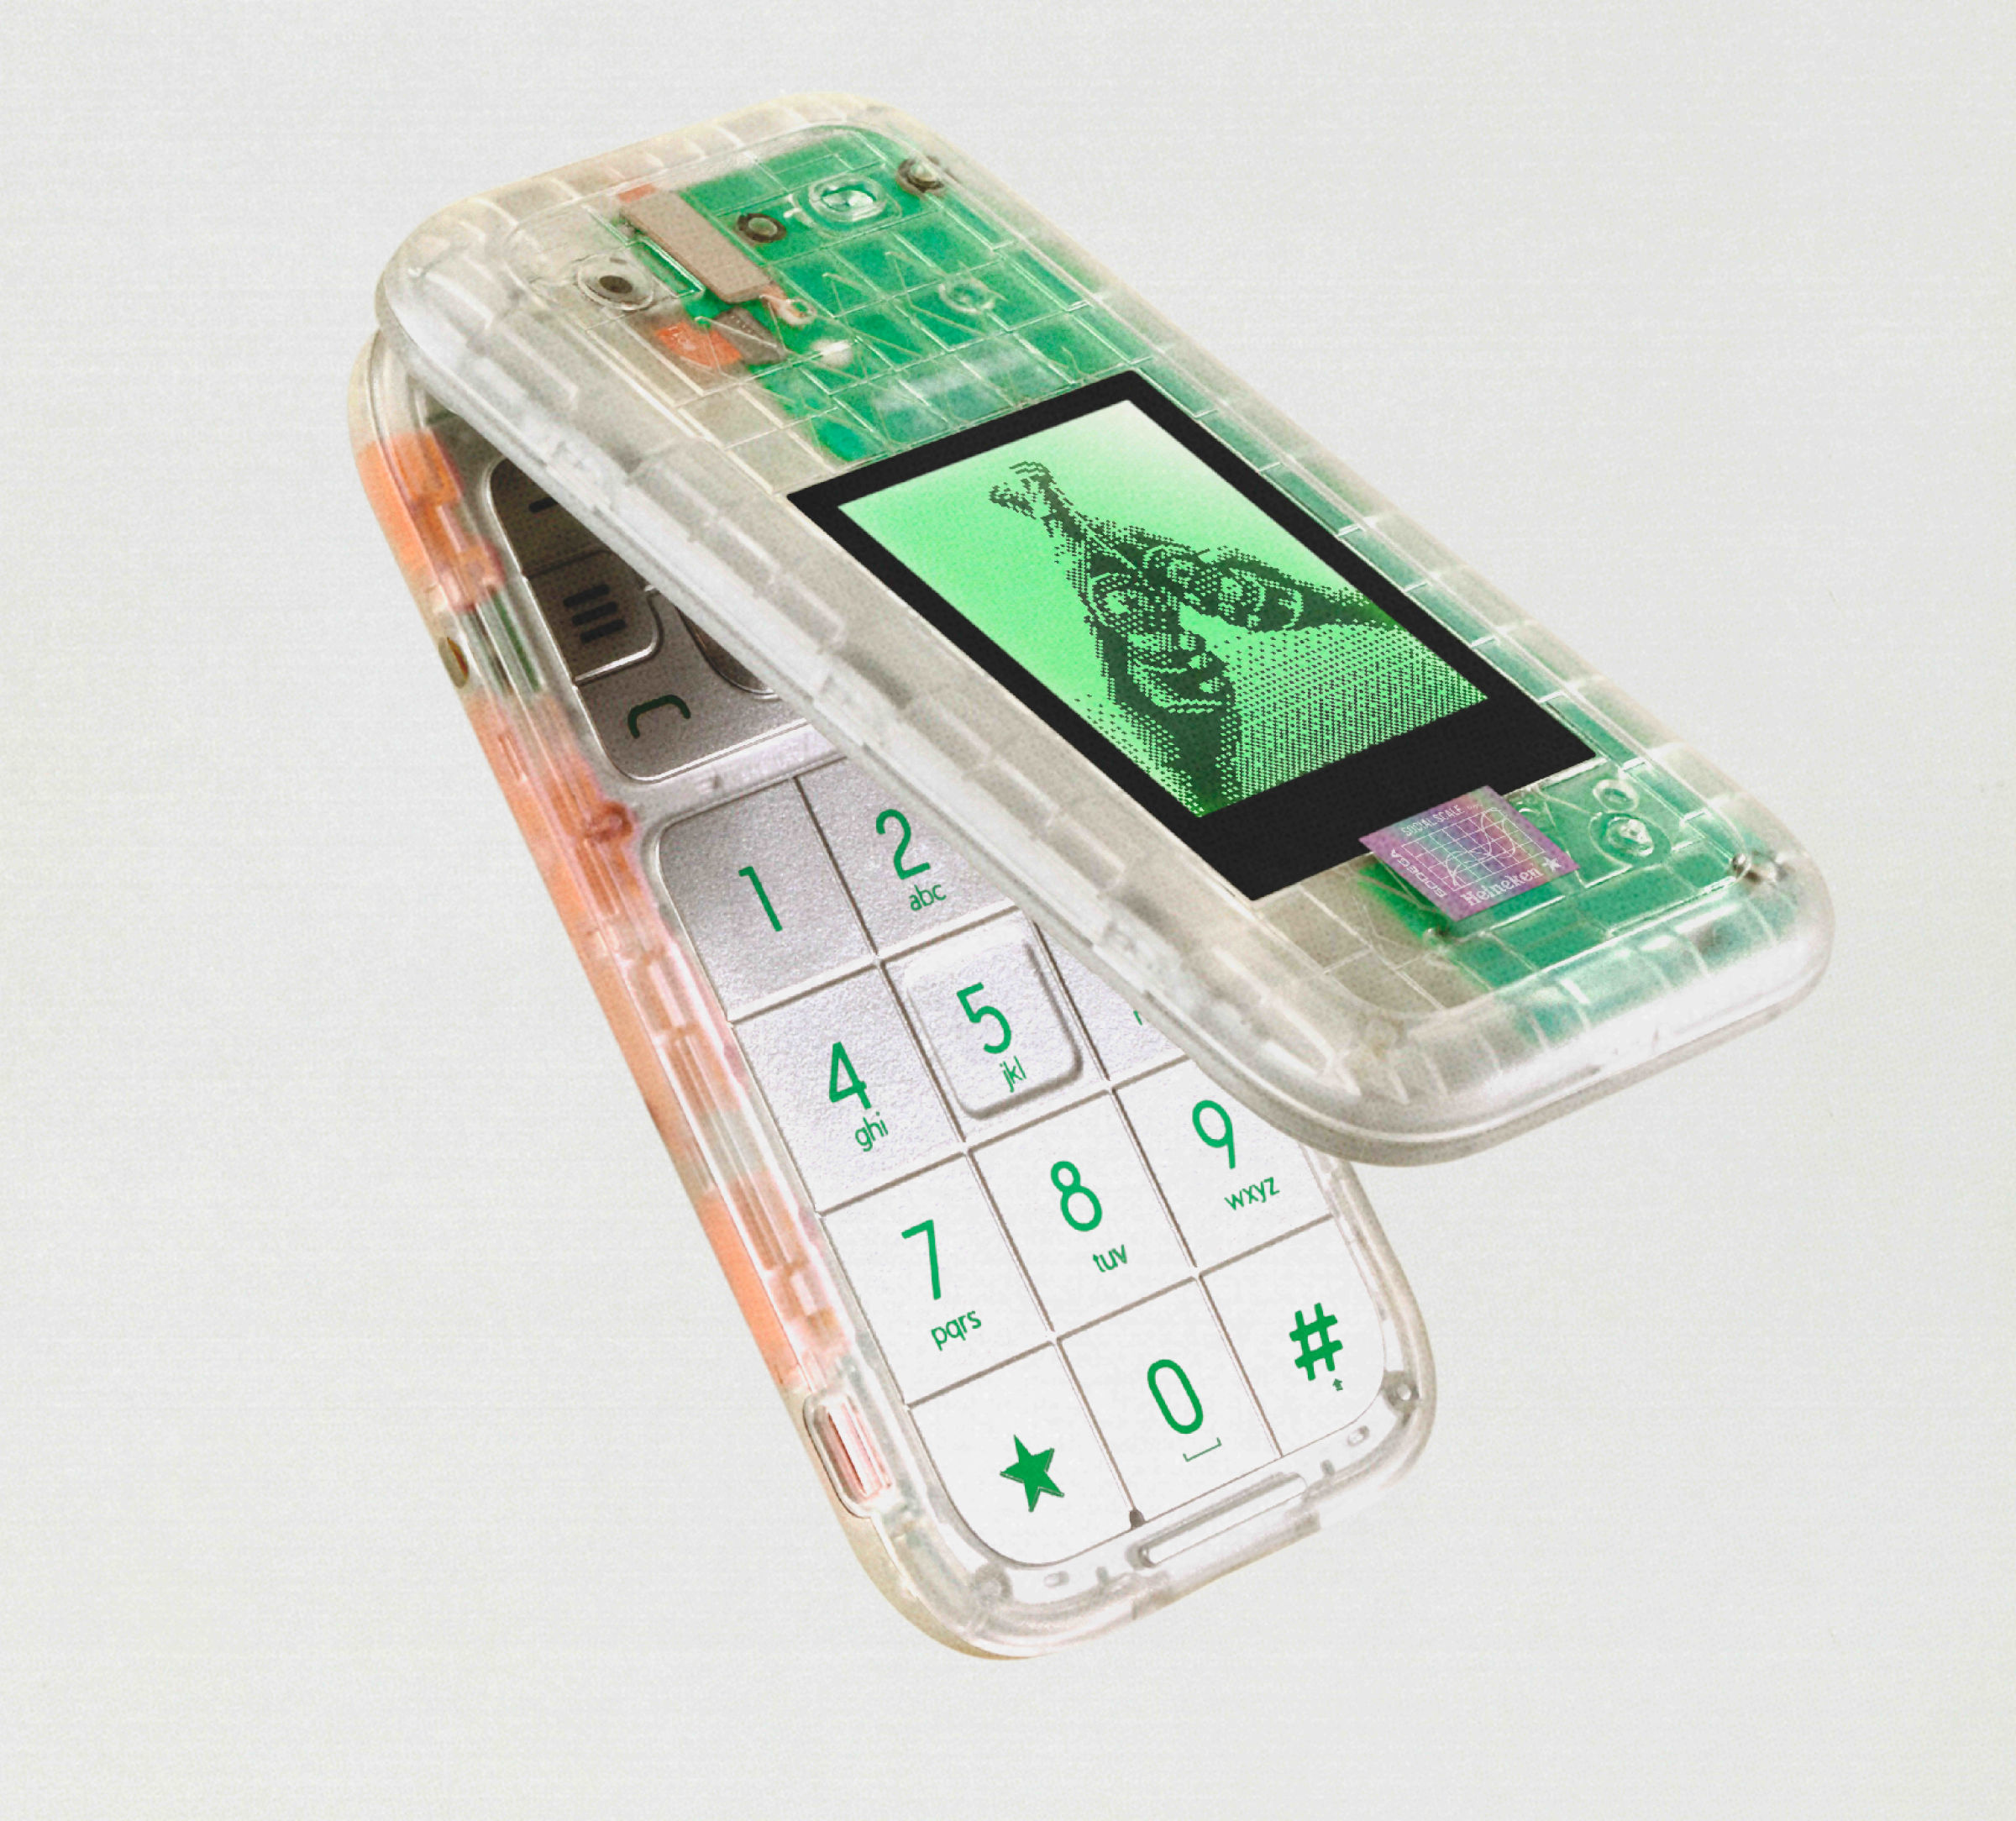 The Boring Phone by Heineken x Bodega